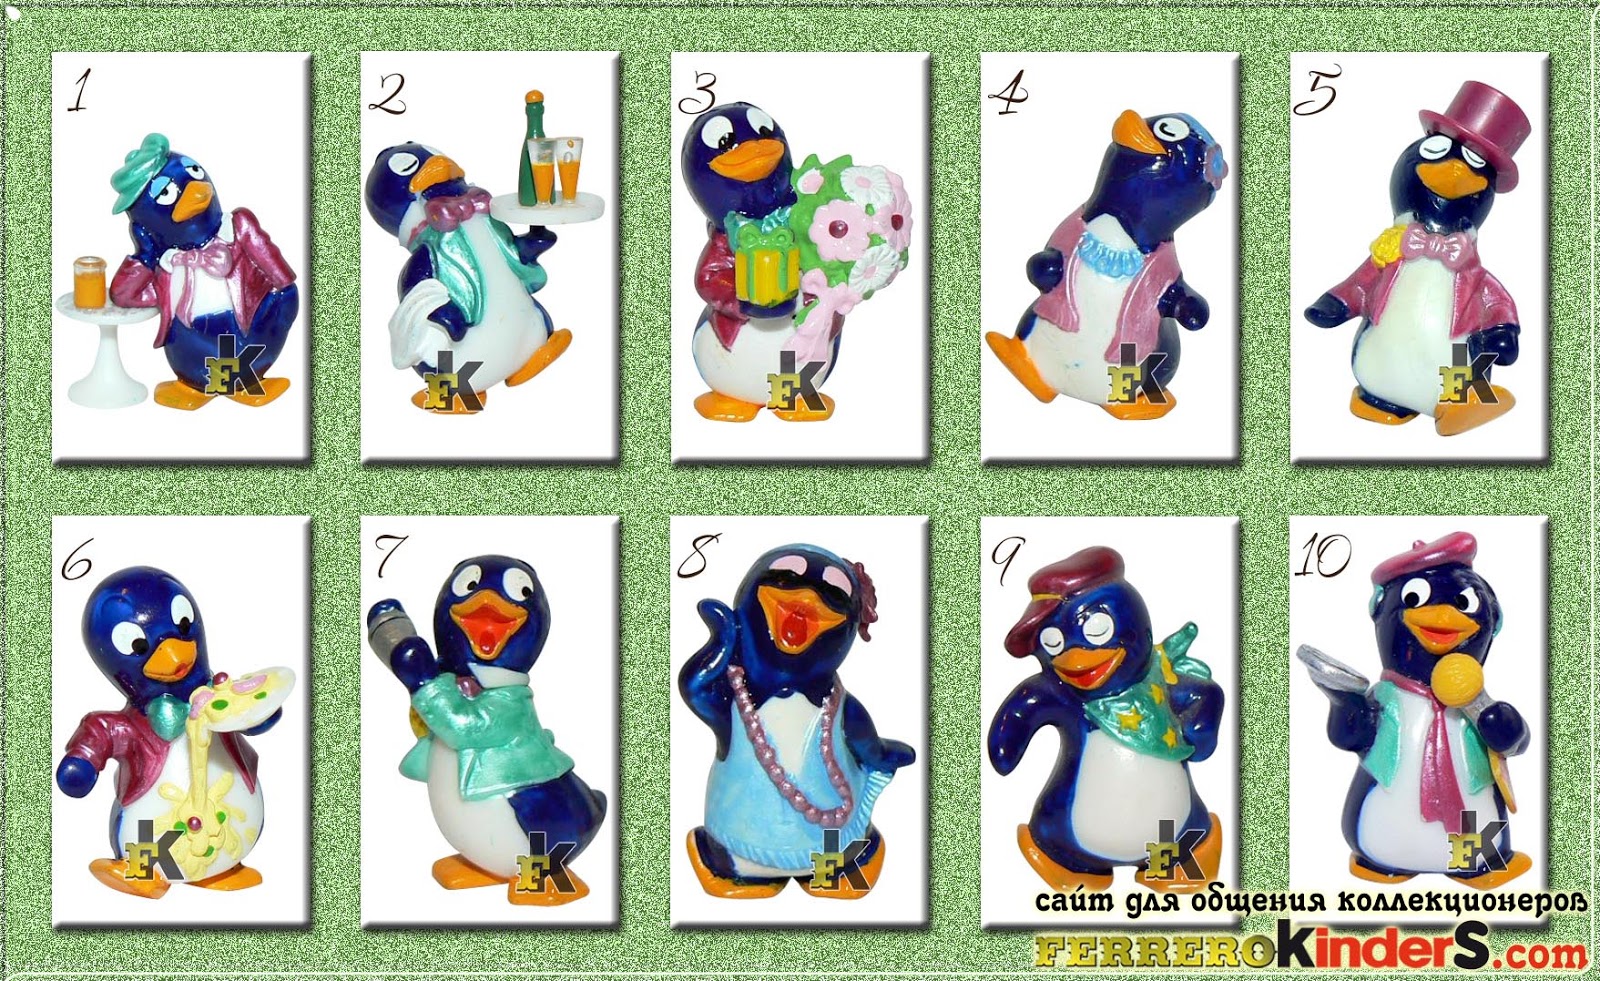 Киндер игрушки пингвины. Коллекция пингвинов из Киндер сюрприза. Коллекция Киндер пингвины 1994. Киндер сюрприз коллекция пингвинов. Киндер коллекции 90-х пингвины.